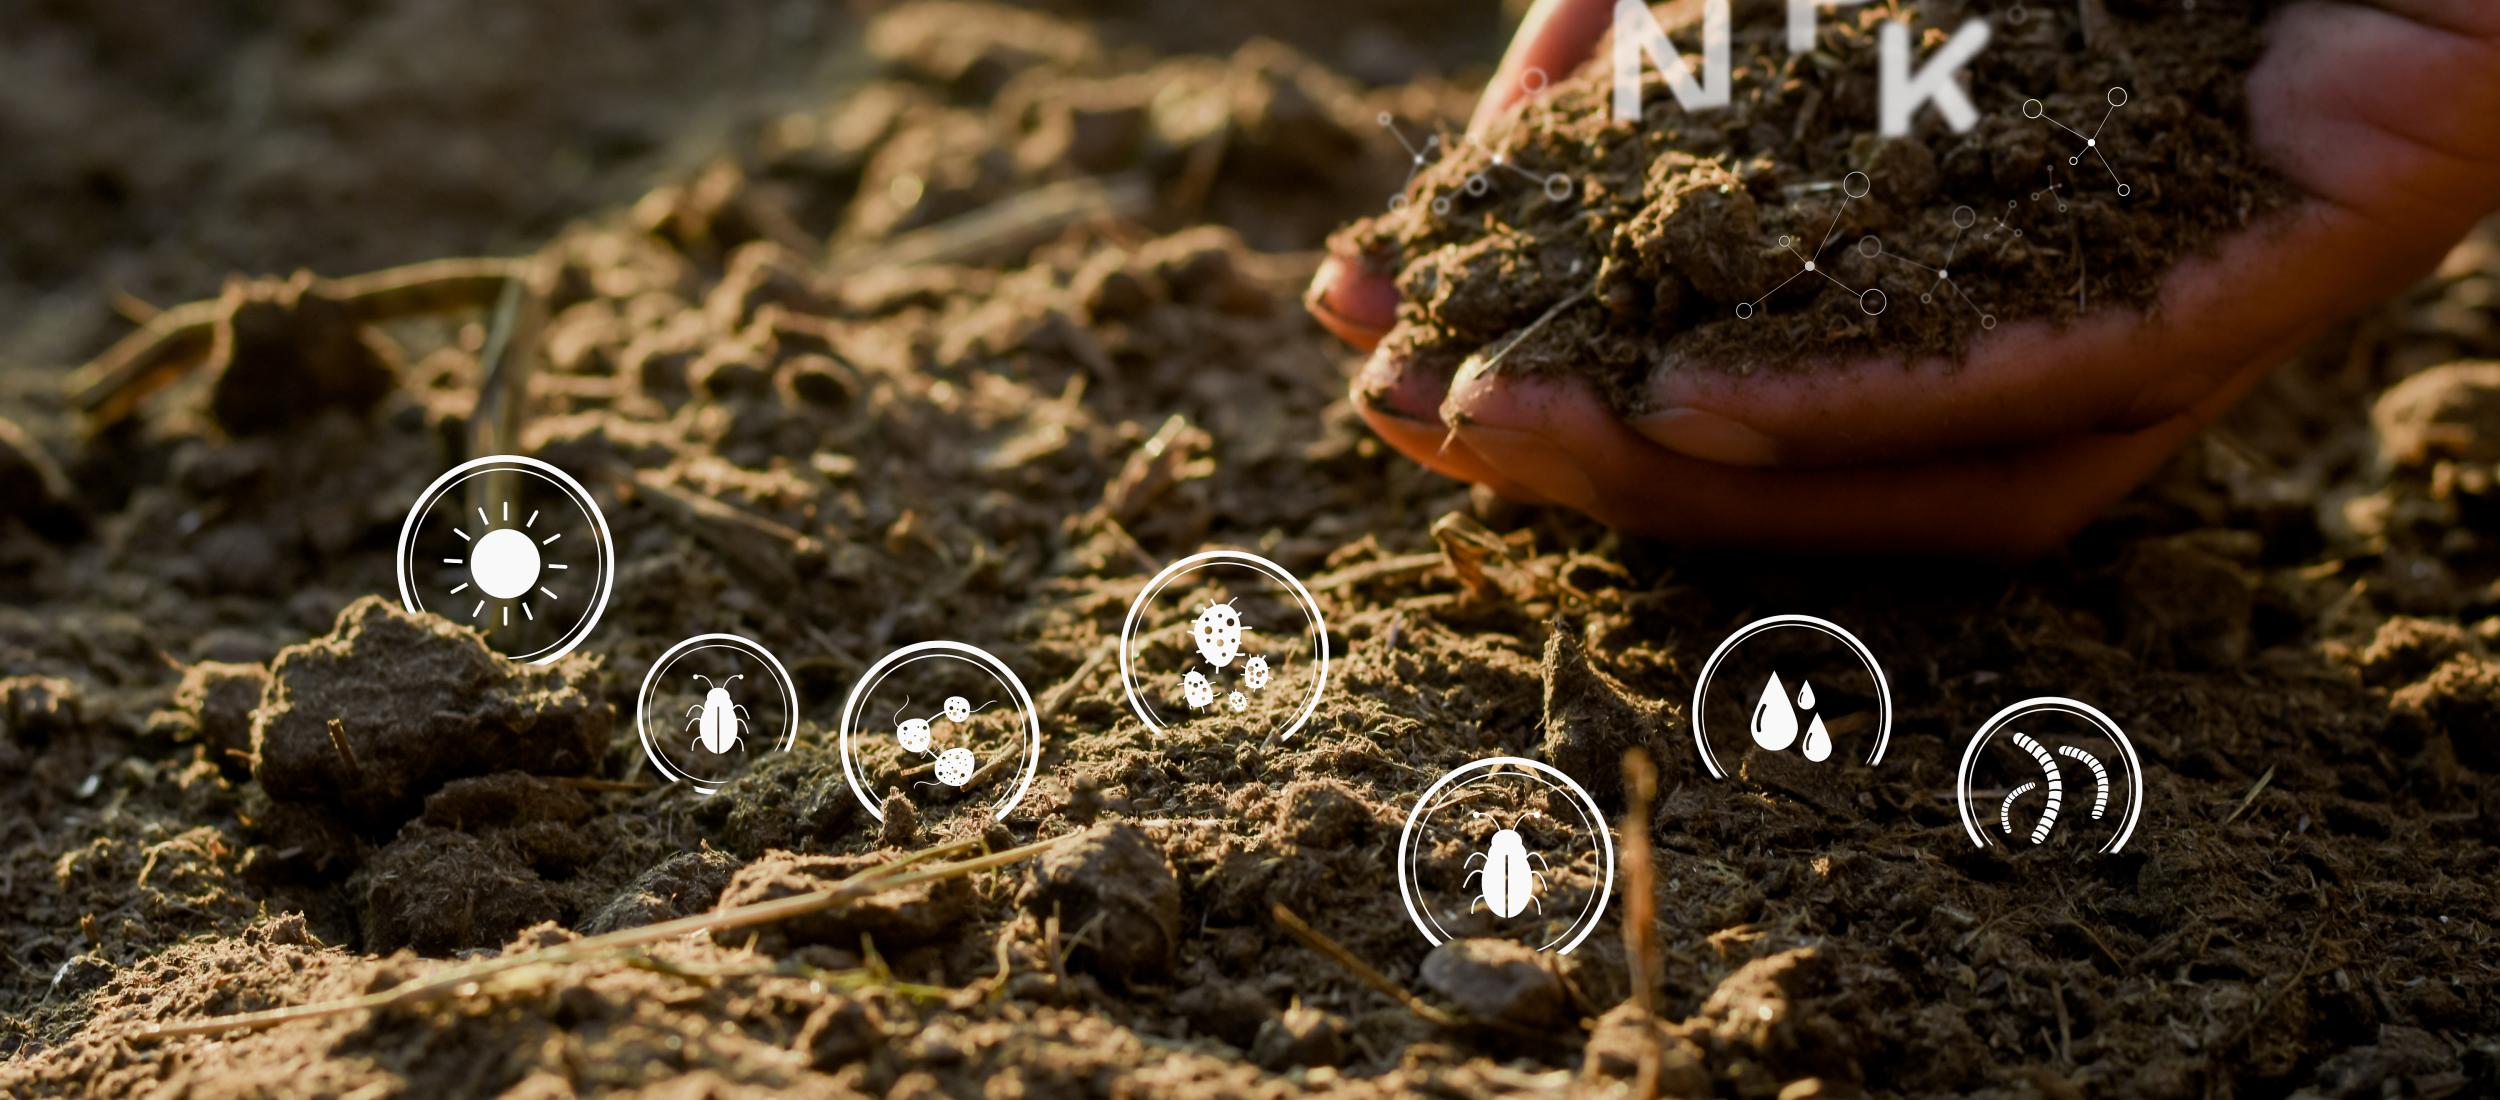 Soil Food Web Cursus